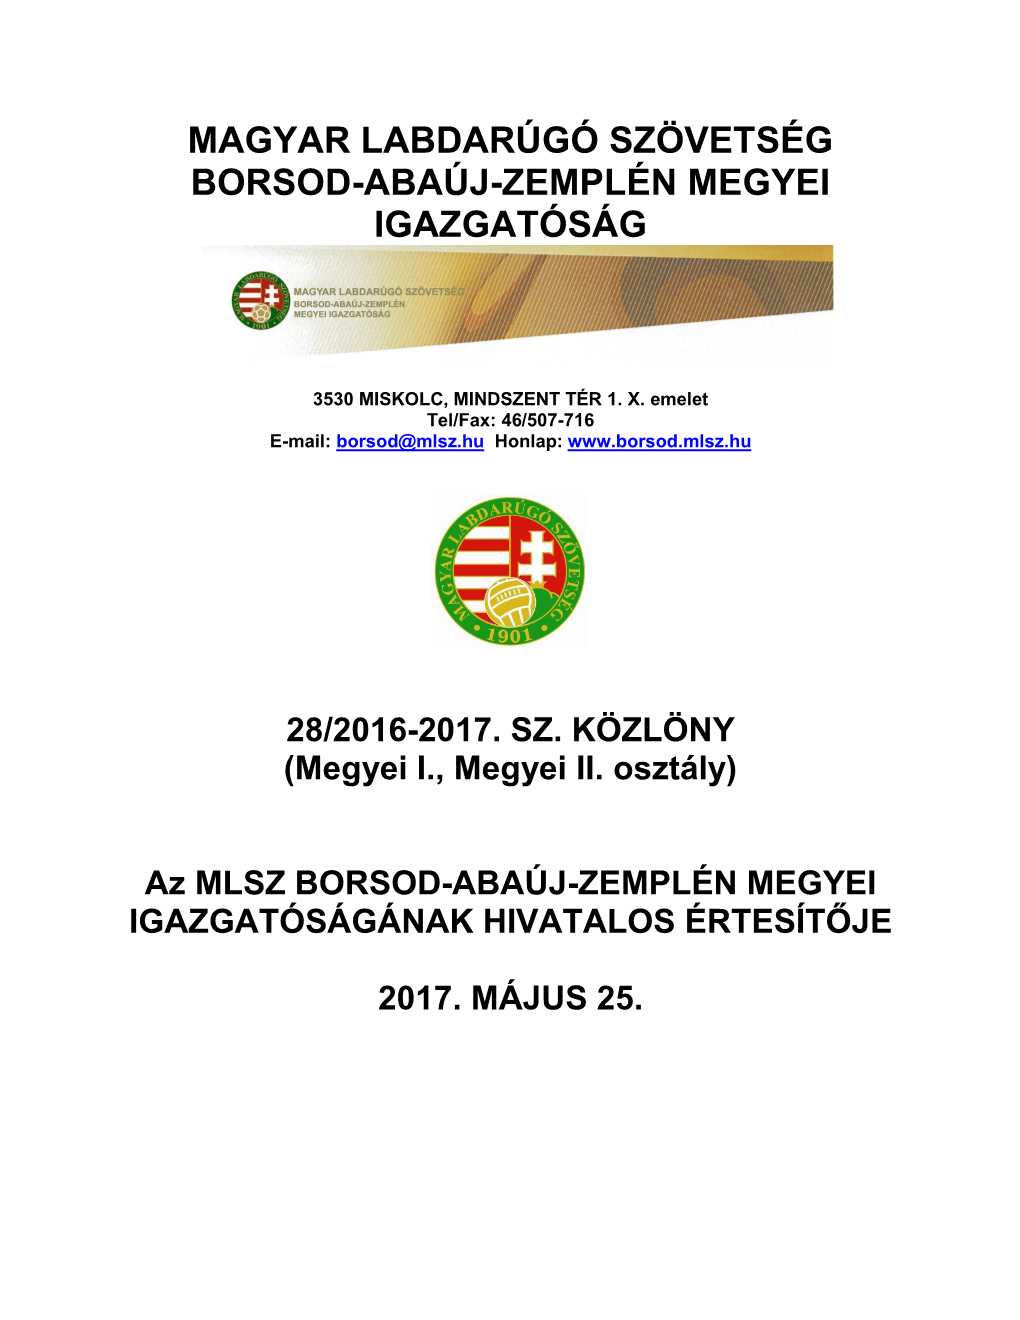 Borsod-Abaúj-Zemplén Megyei Igazgatóság